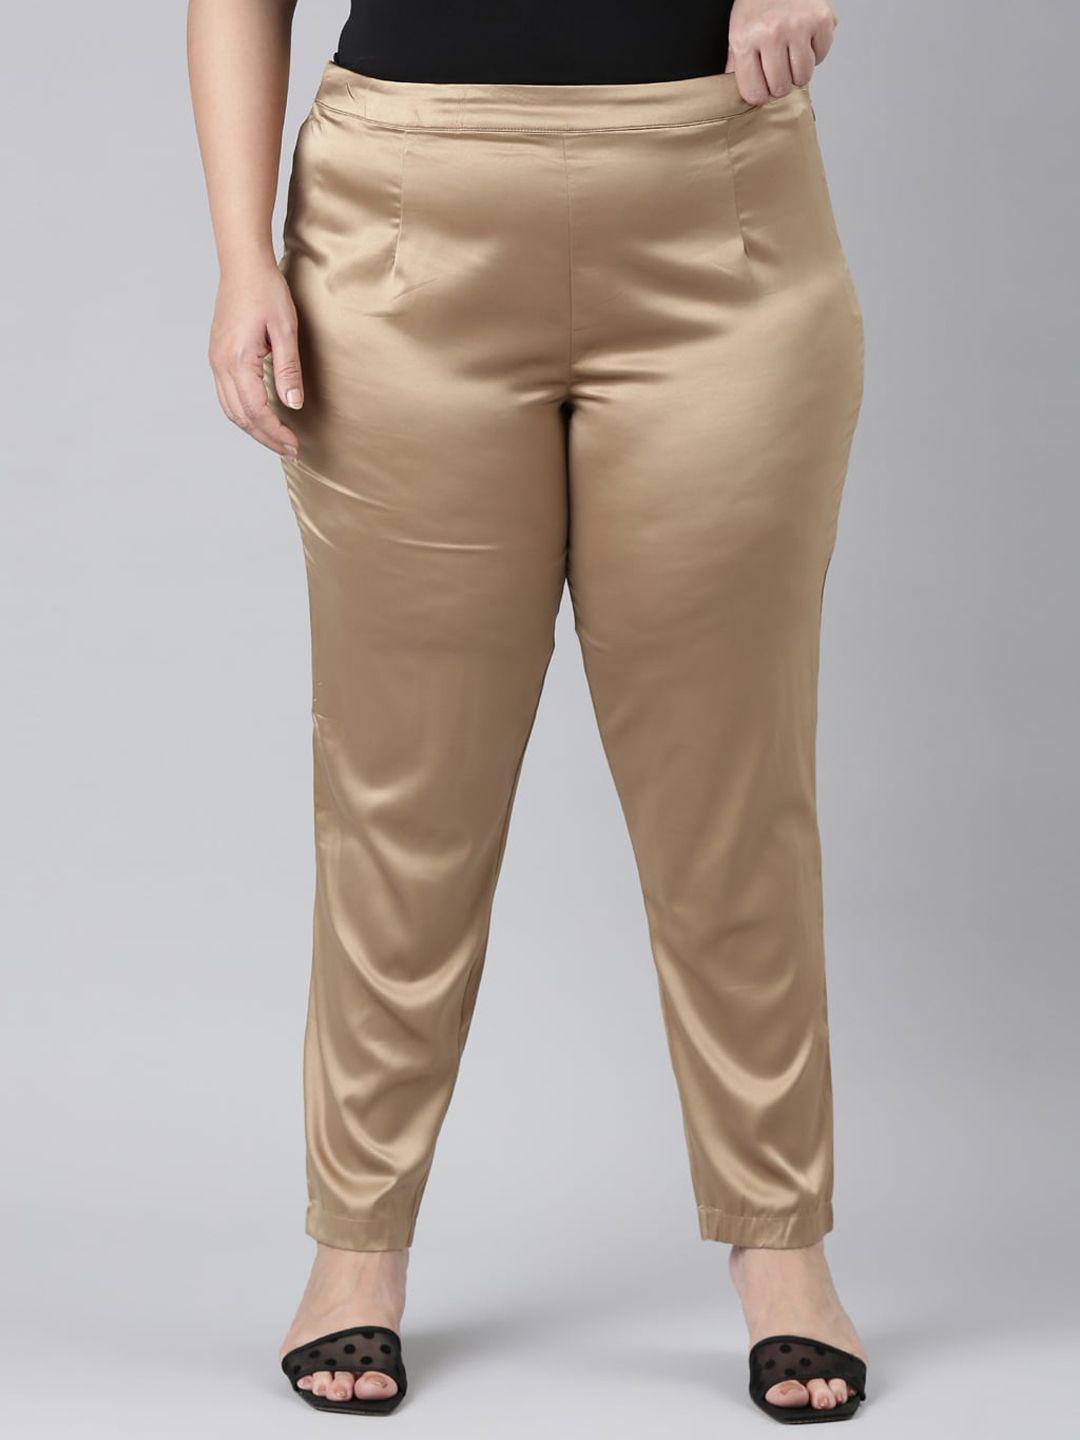 go-colors-women-plus-size-slim-fit-trousers